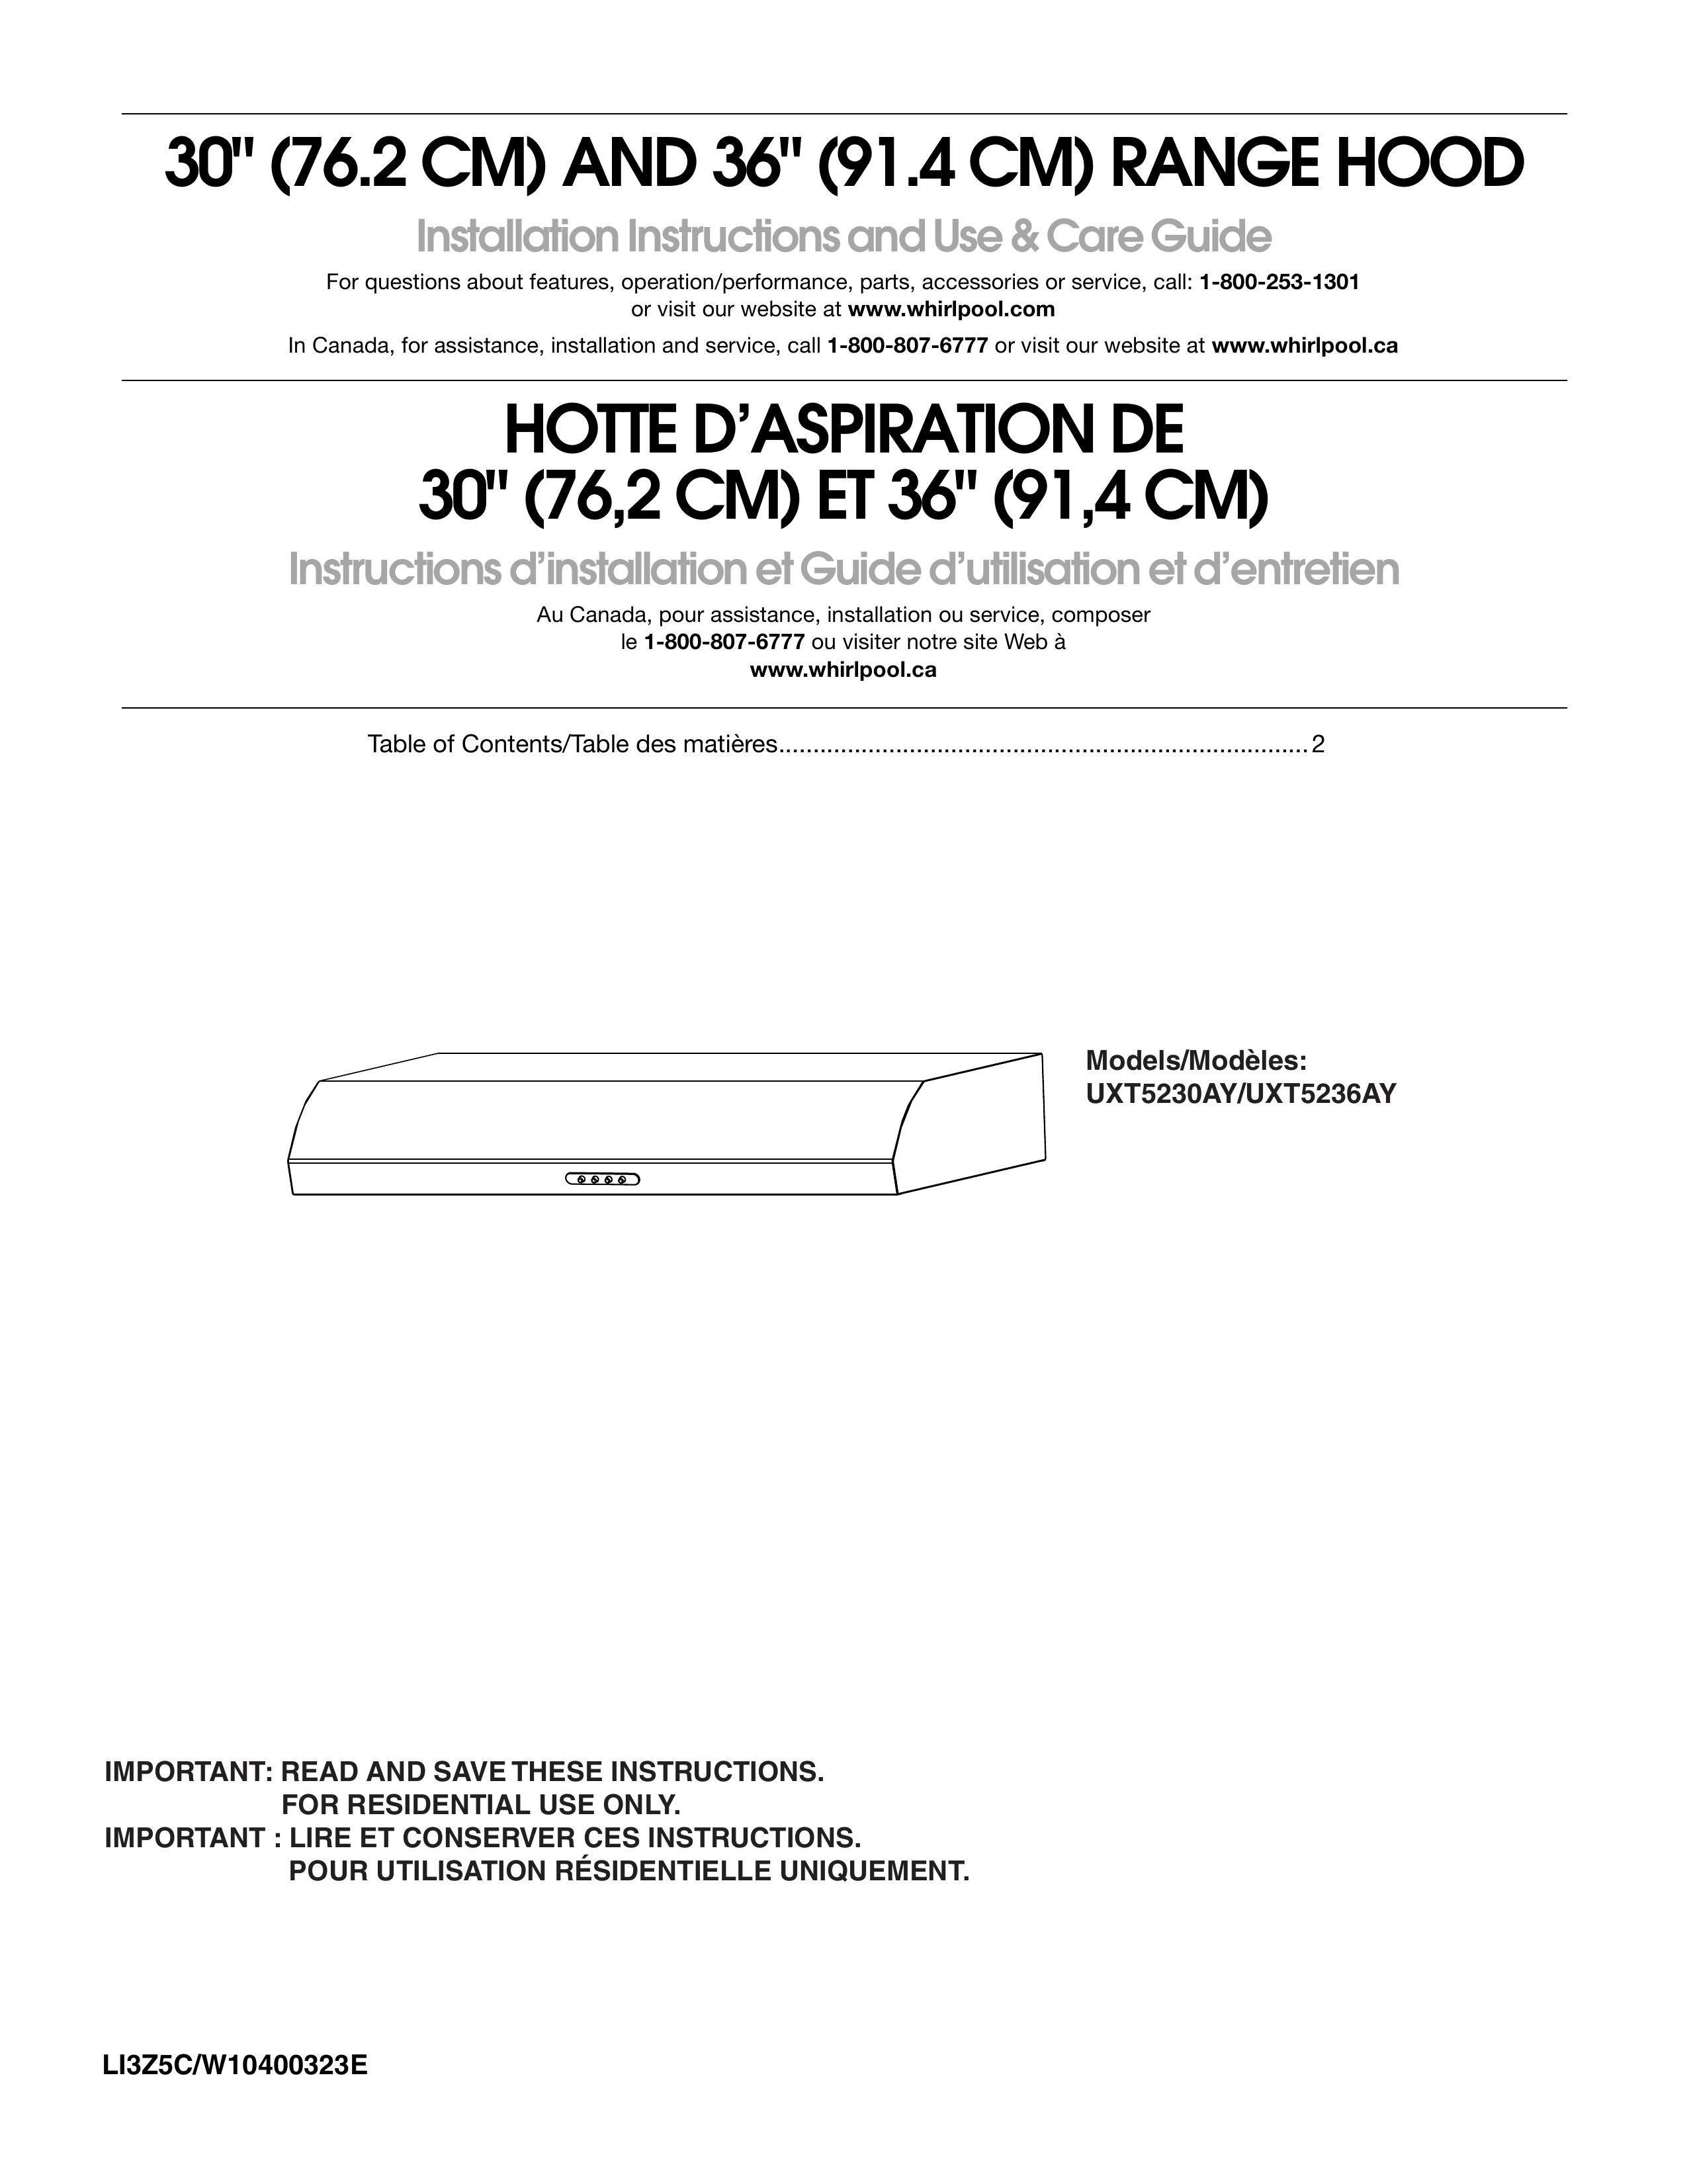 Maytag UXT5230AY Ventilation Hood User Manual